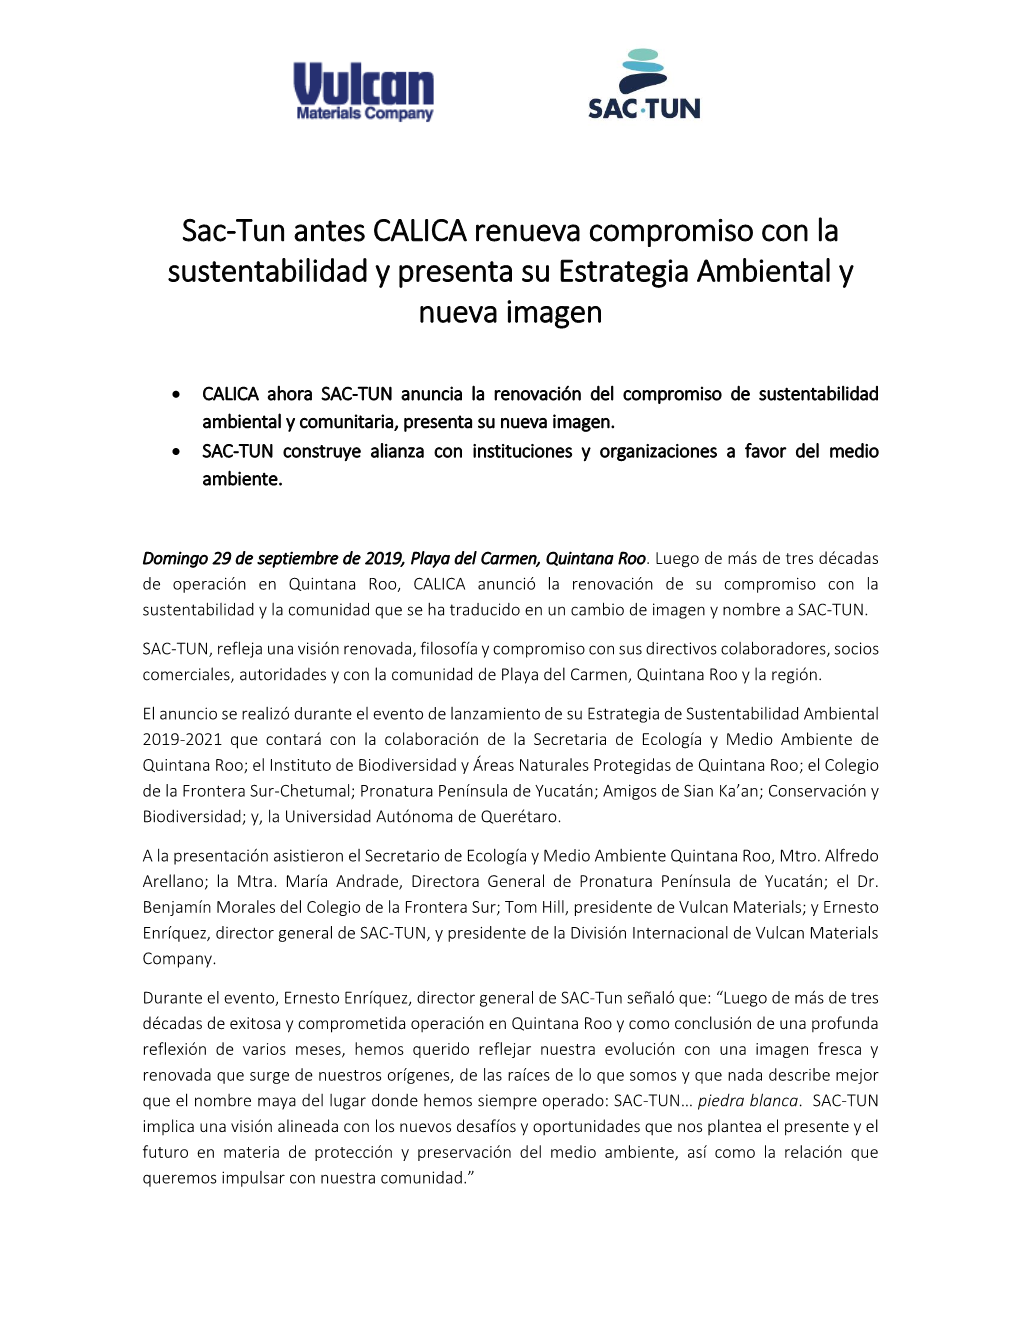 Sac-Tun Antes CALICA Renueva Compromiso Con La Sustentabilidad Y Presenta Su Estrategia Ambiental Y Nueva Imagen